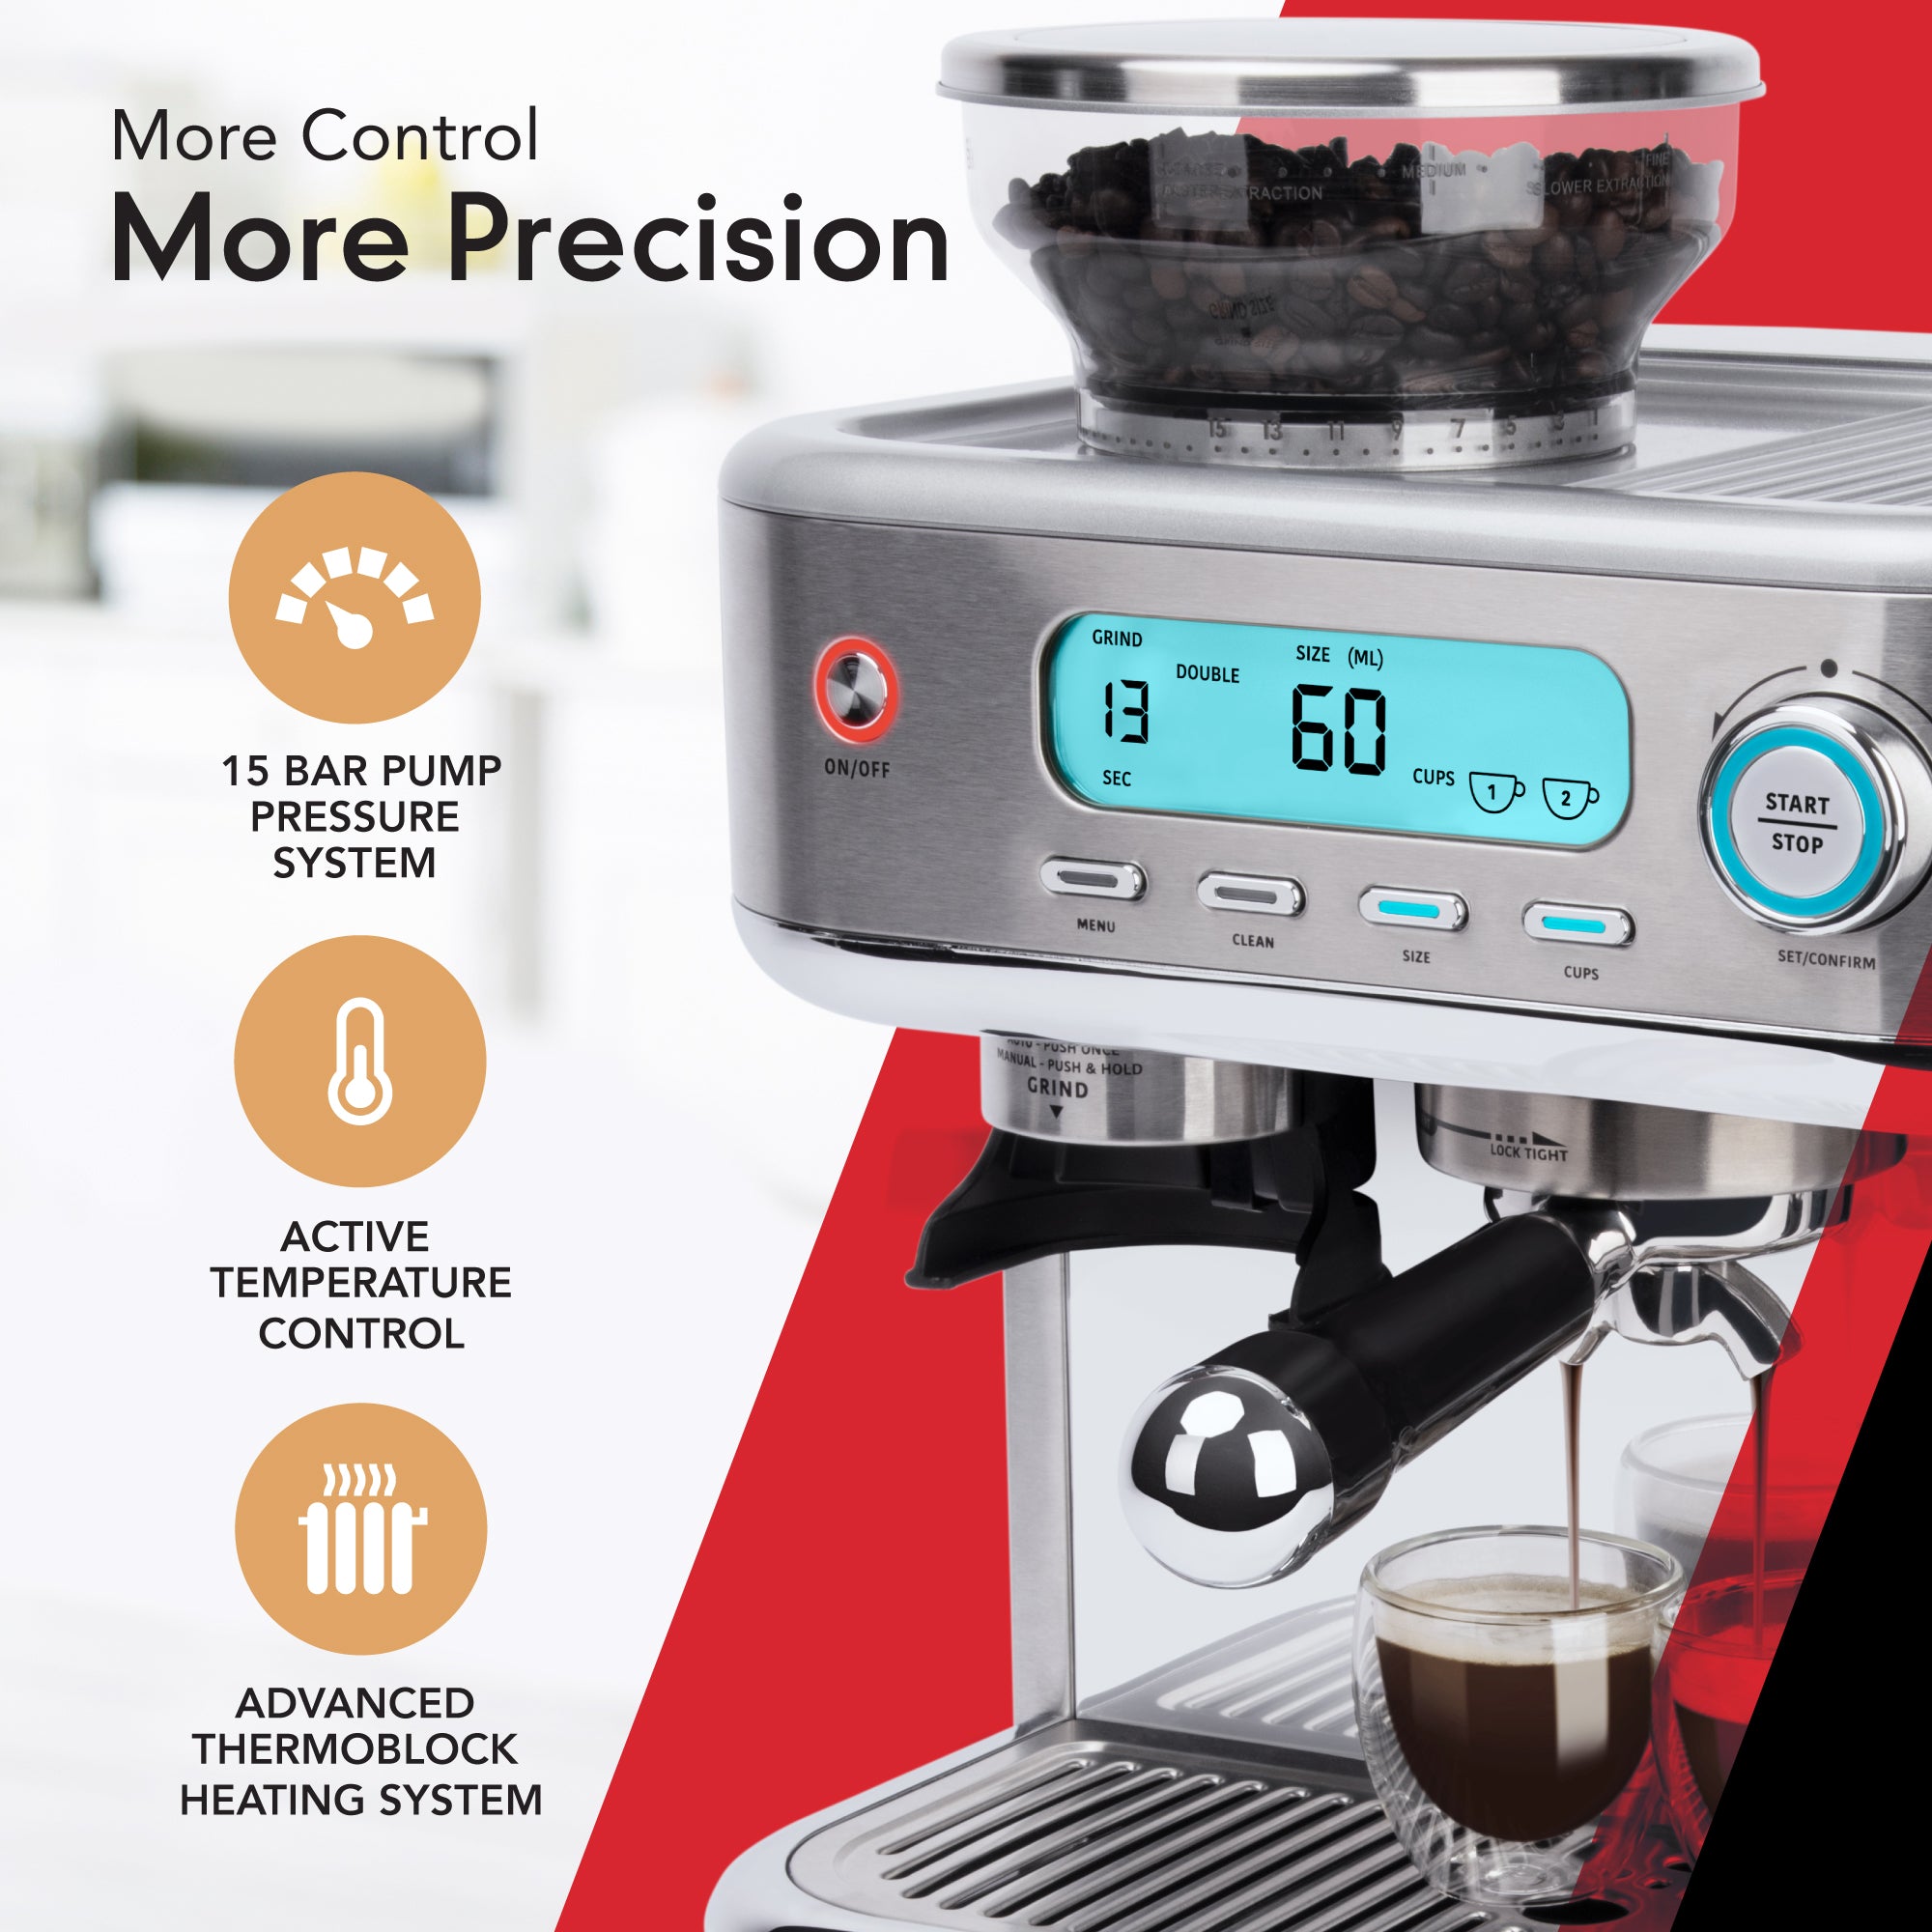 Machine à café Espresso SAGE Barista Pro - Incapto